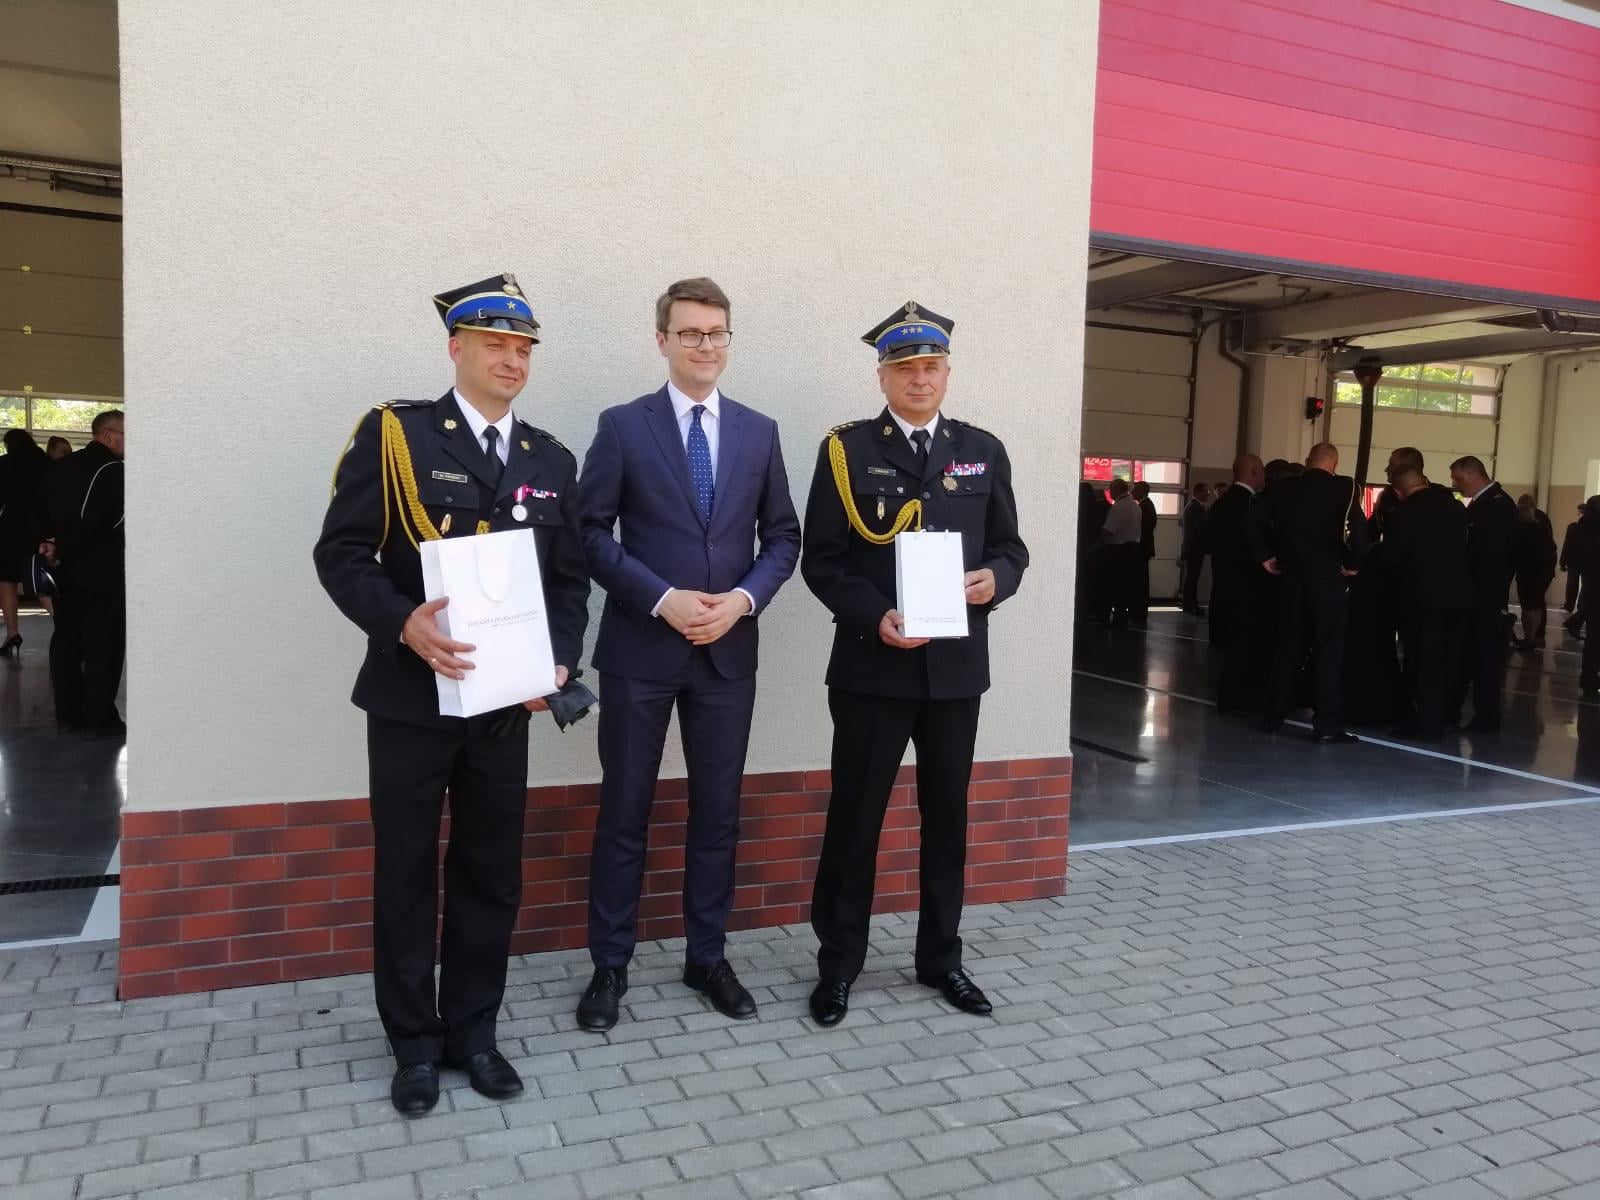 Uroczystość dotyczyła zakończenia inwestycji rozbudowy Jednostki Ratowniczo-Gaśniczej Państwowej Straży Pożarnej nr 2 w Słupsku oraz przekazania sprzętu dla jednostek ochrony przeciwpożarowej.